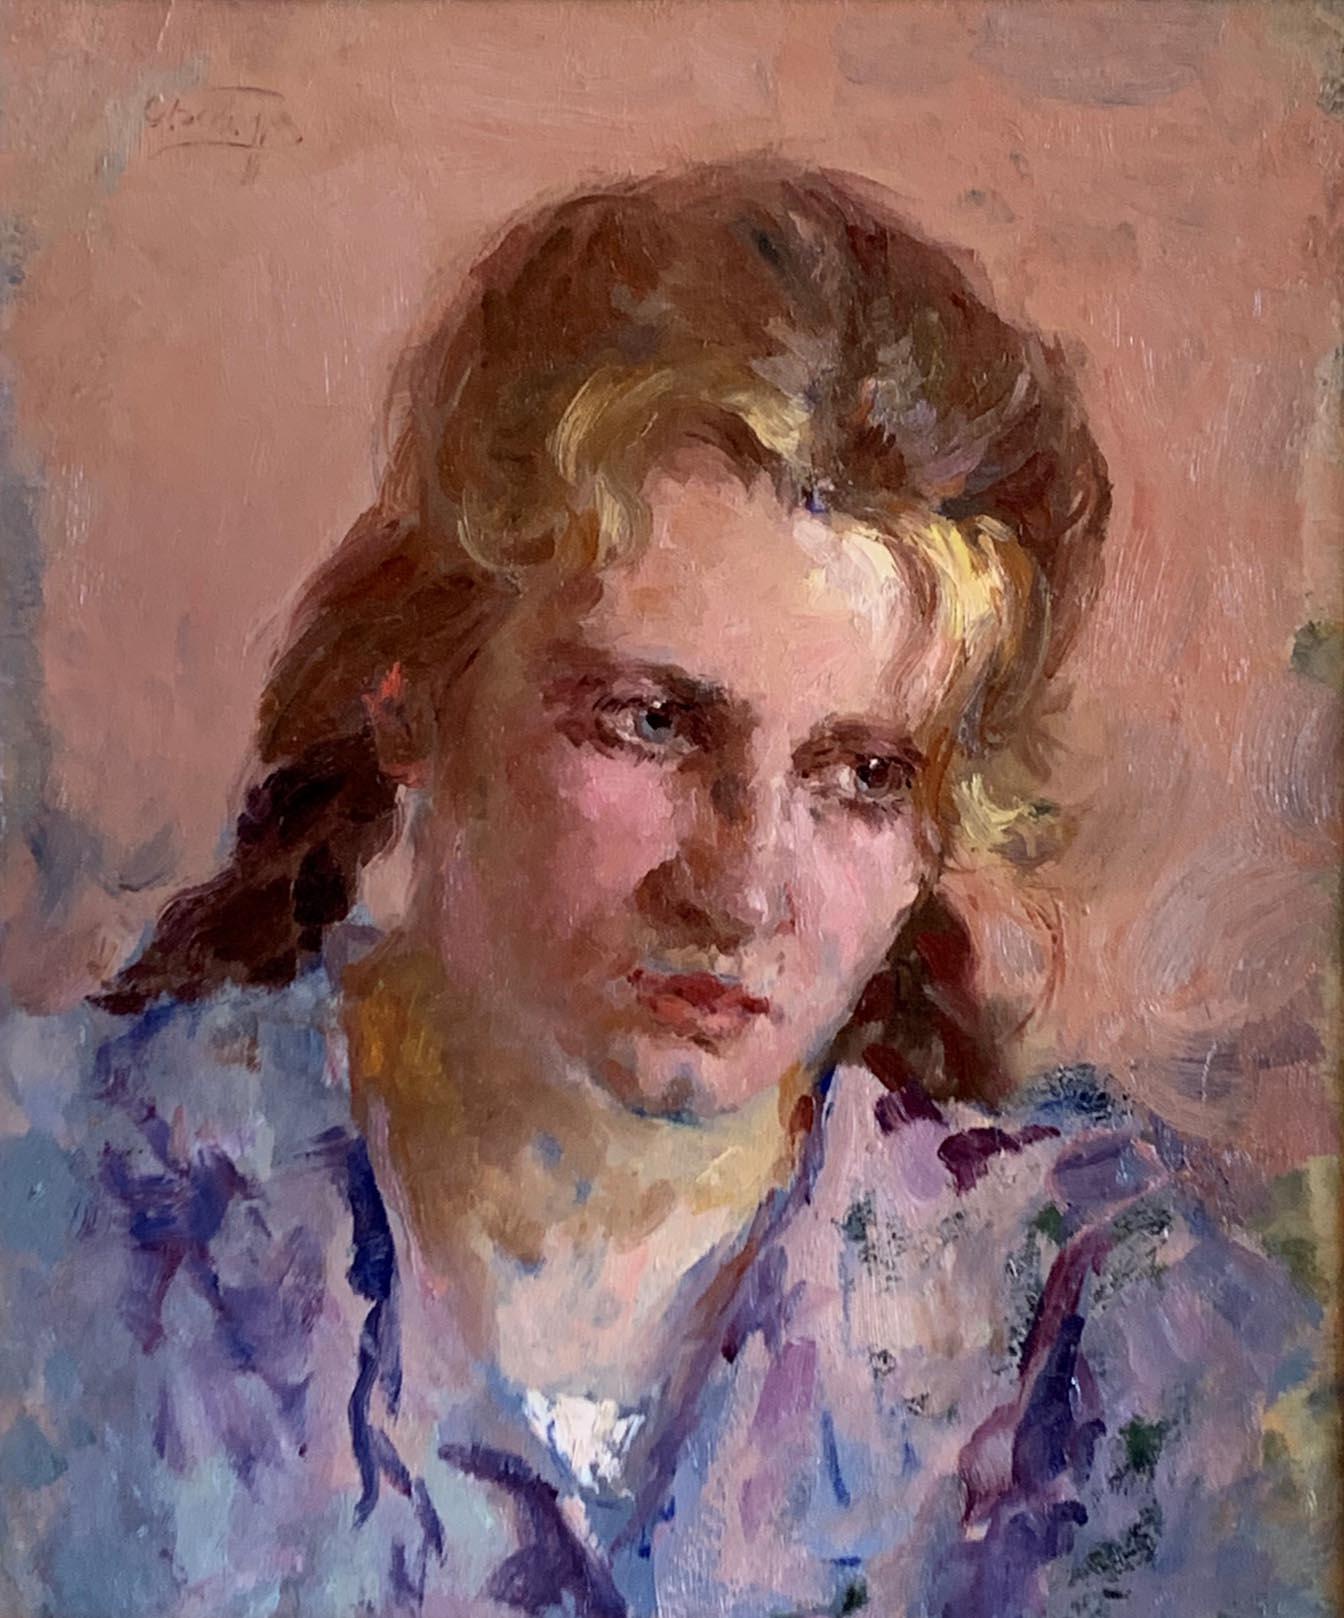 Junge Frau – Painting von Sergei Besedin